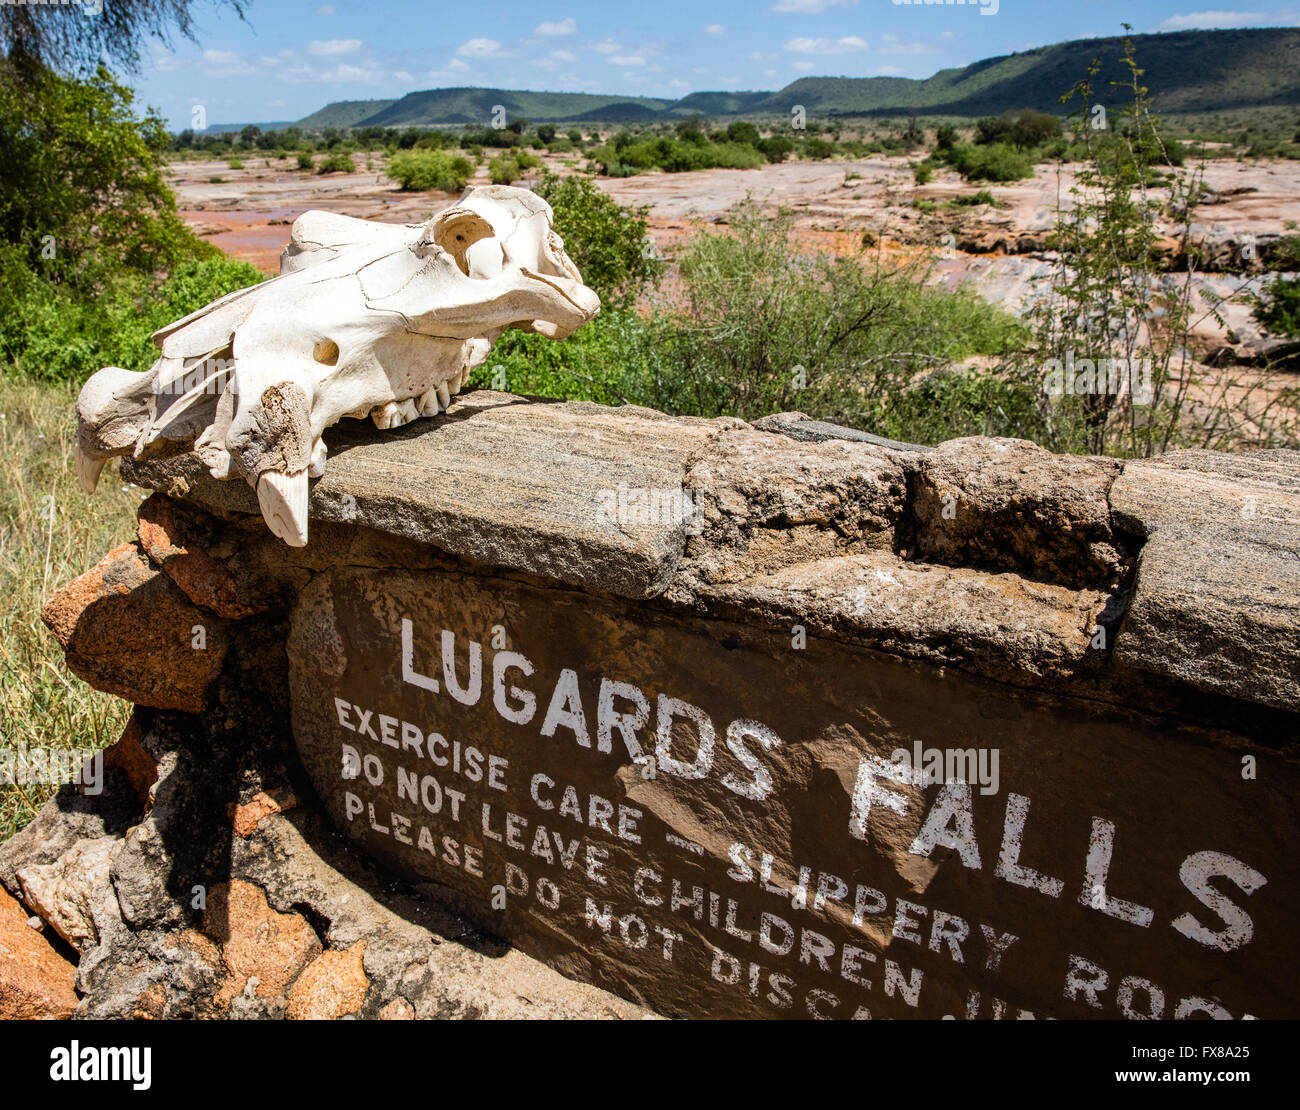 Un crâne d'hippopotame est assis sur le panneau pour Lugards Falls sur la rivière Galana circulant dans le parc national de Tsavo East au Kenya Banque D'Images